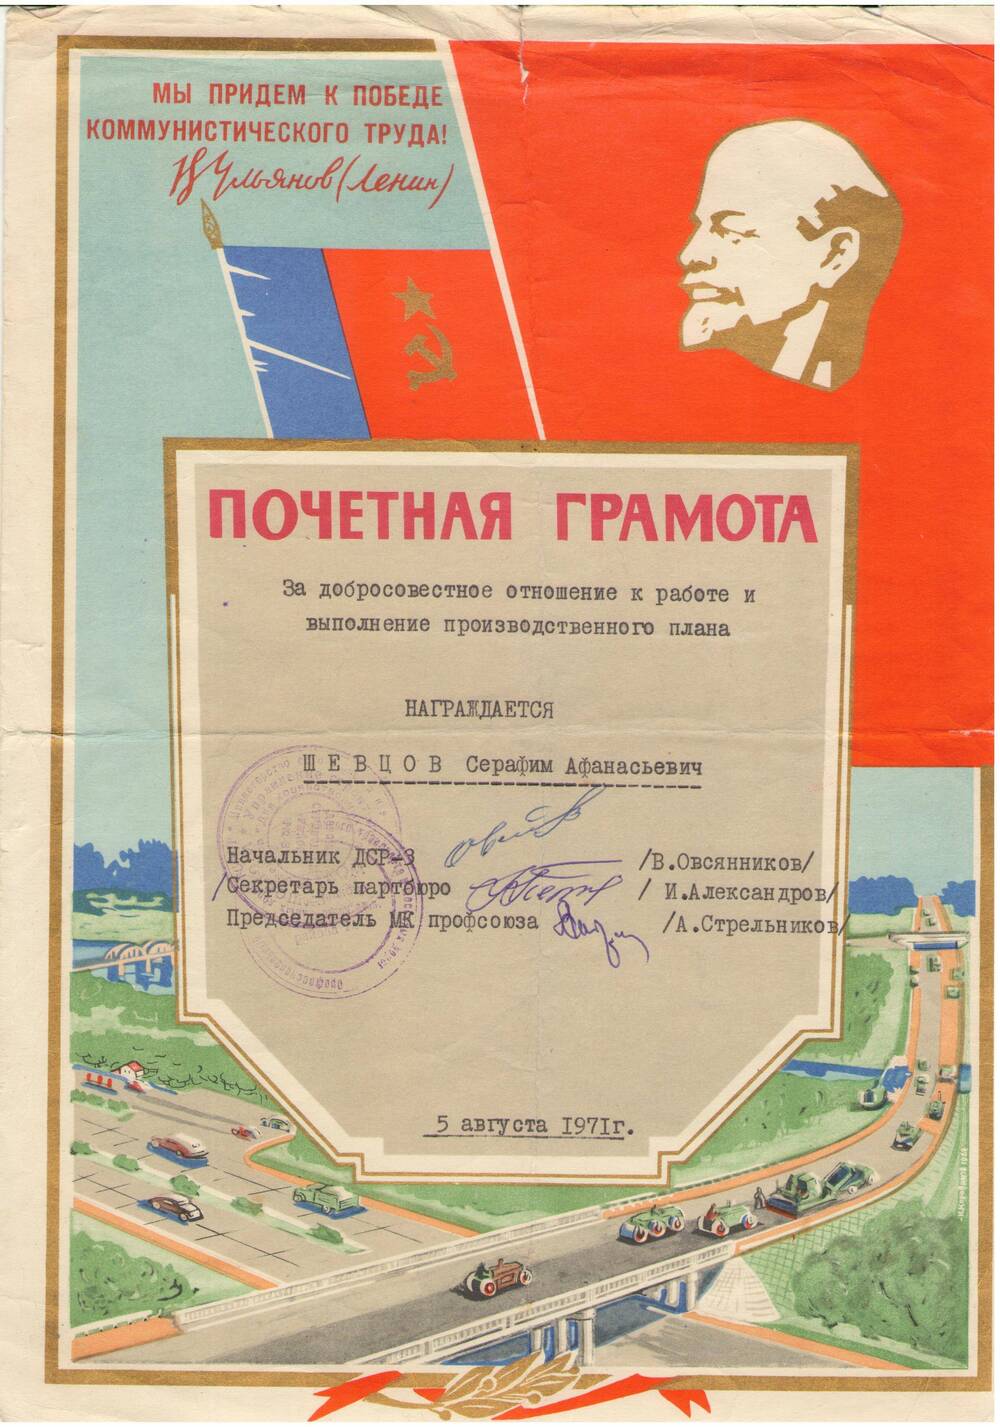 Почетная грамота Шевцову Серафиму Афанасьевичу за добросовестный труд. 5 августа 1971 г.